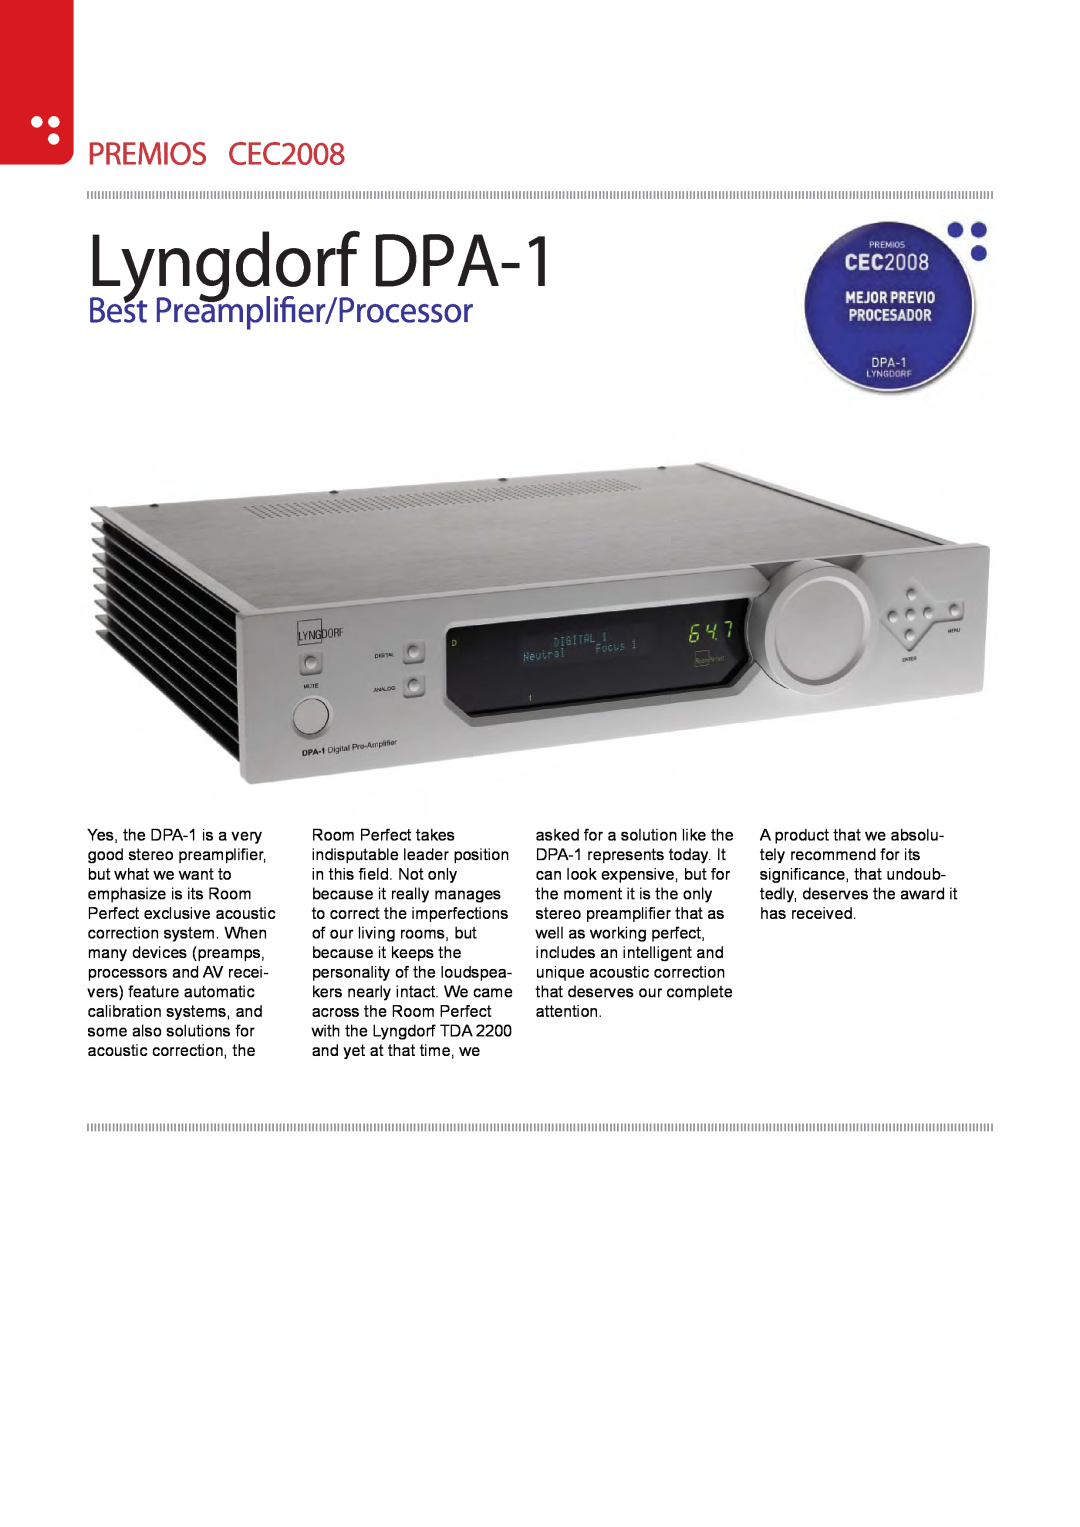 Lyngdorf Audio manual Lyngdorf DPA-1, Best Preamplier/Processor, PREMIOS CEC2008 